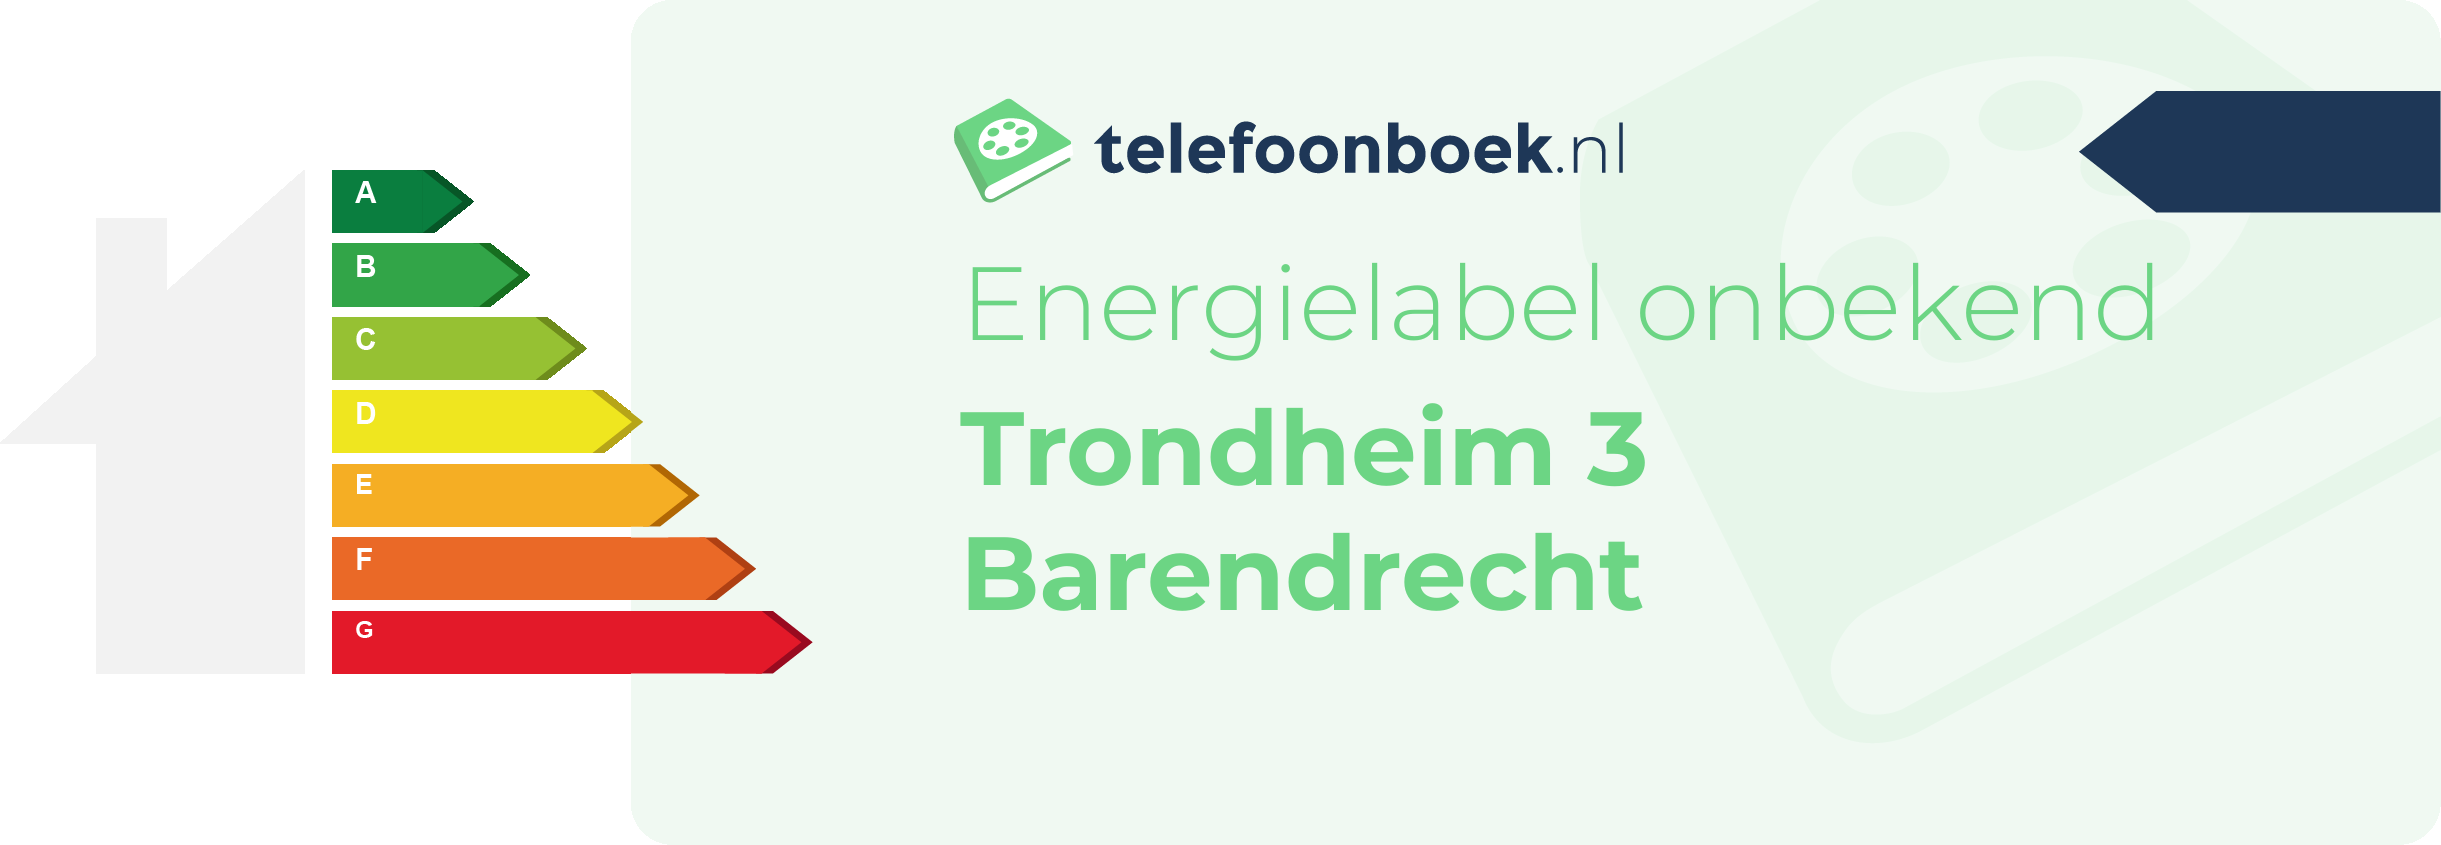 Energielabel Trondheim 3 Barendrecht